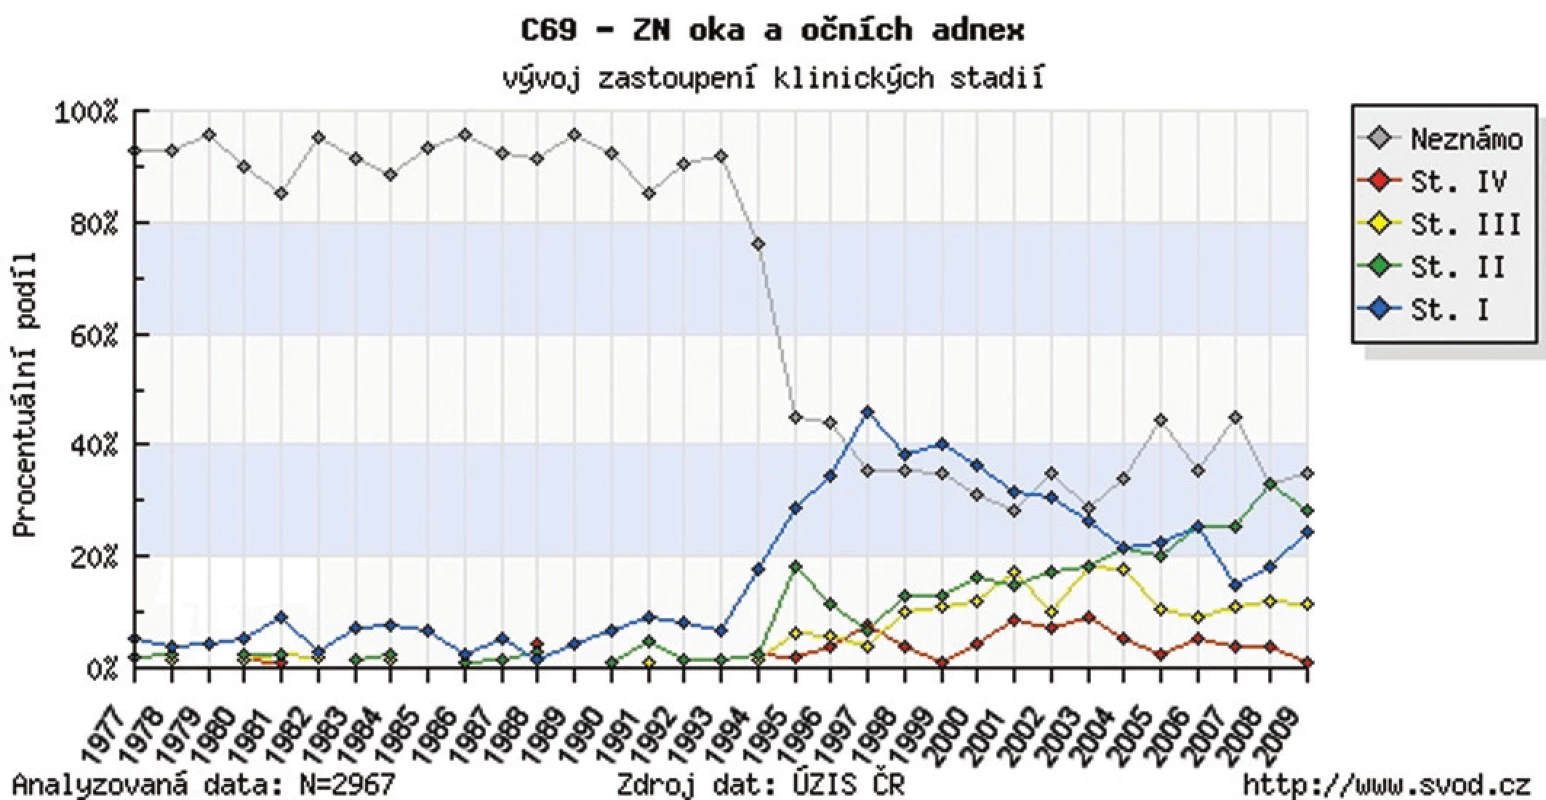 Zhubný nádor oka a adnex v ČR – vývoj zastúpenia klinických štádií v r. 1977–2009